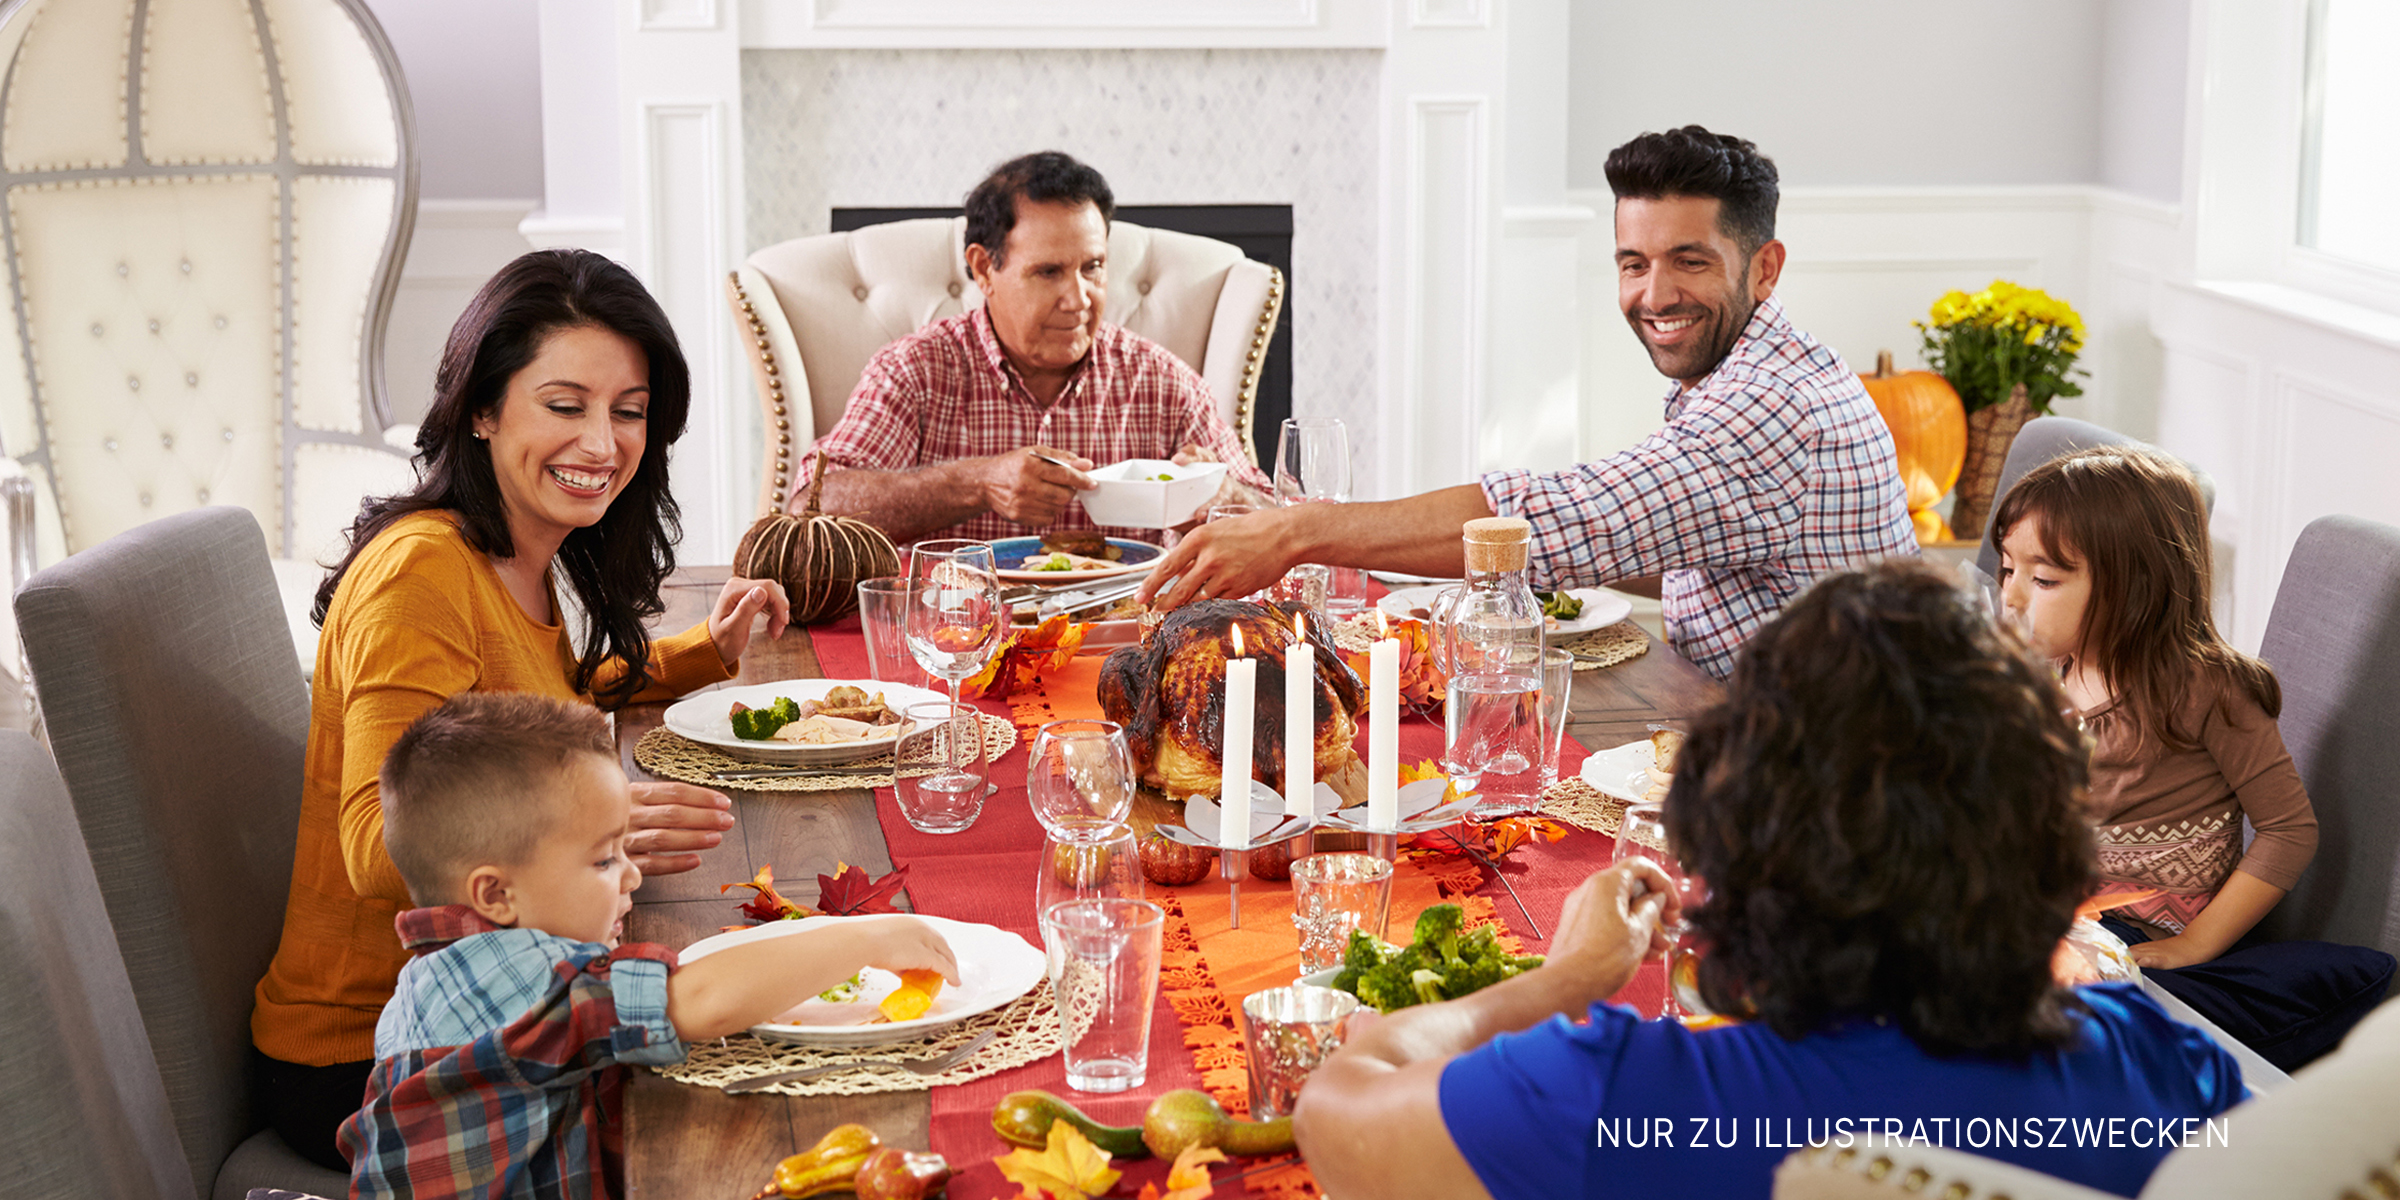 Eine Familie beim Abendessen | Quelle: Shutterstock